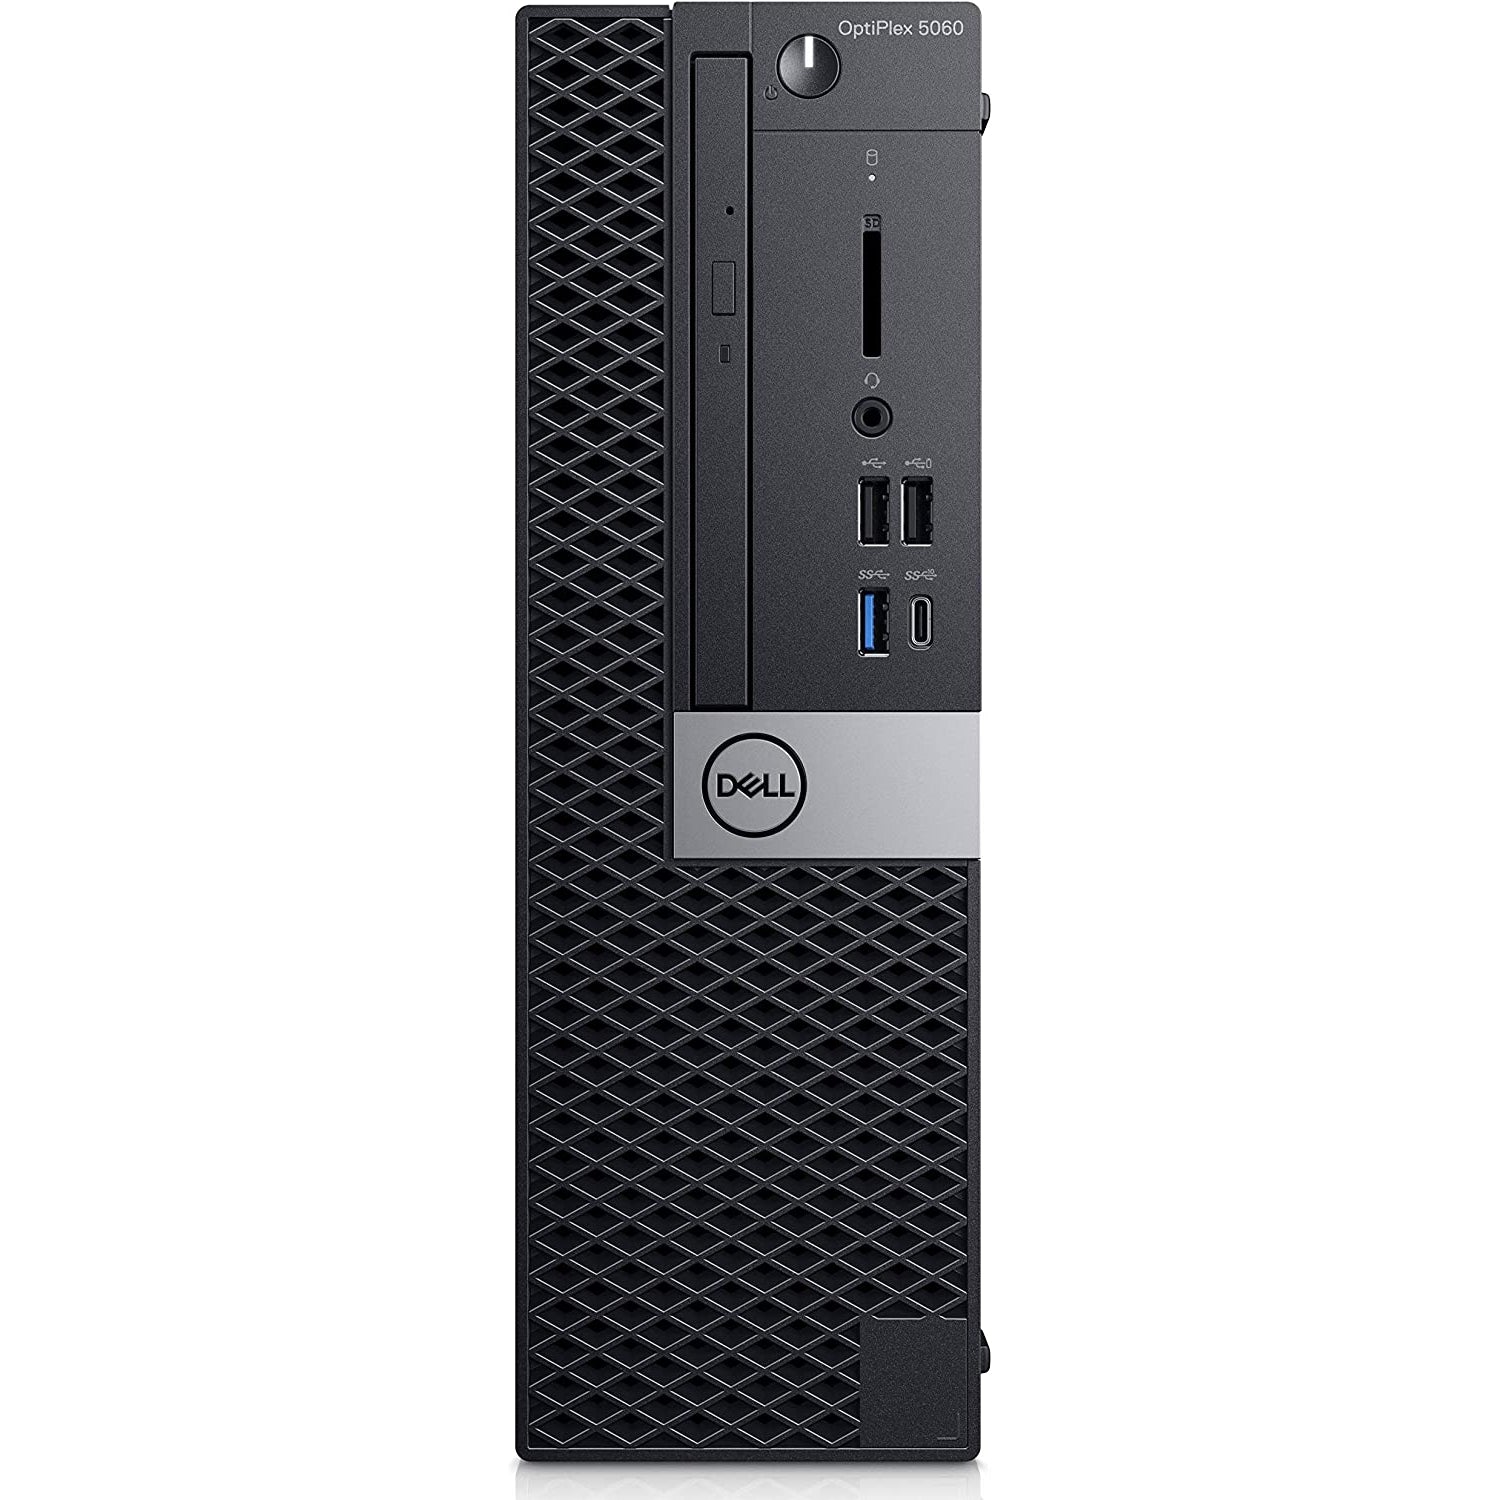 Dell OptiPlex 5060 Intel Core i7-8700, 32GB RAM 256GB SSD, Black - Refurbished Excellent